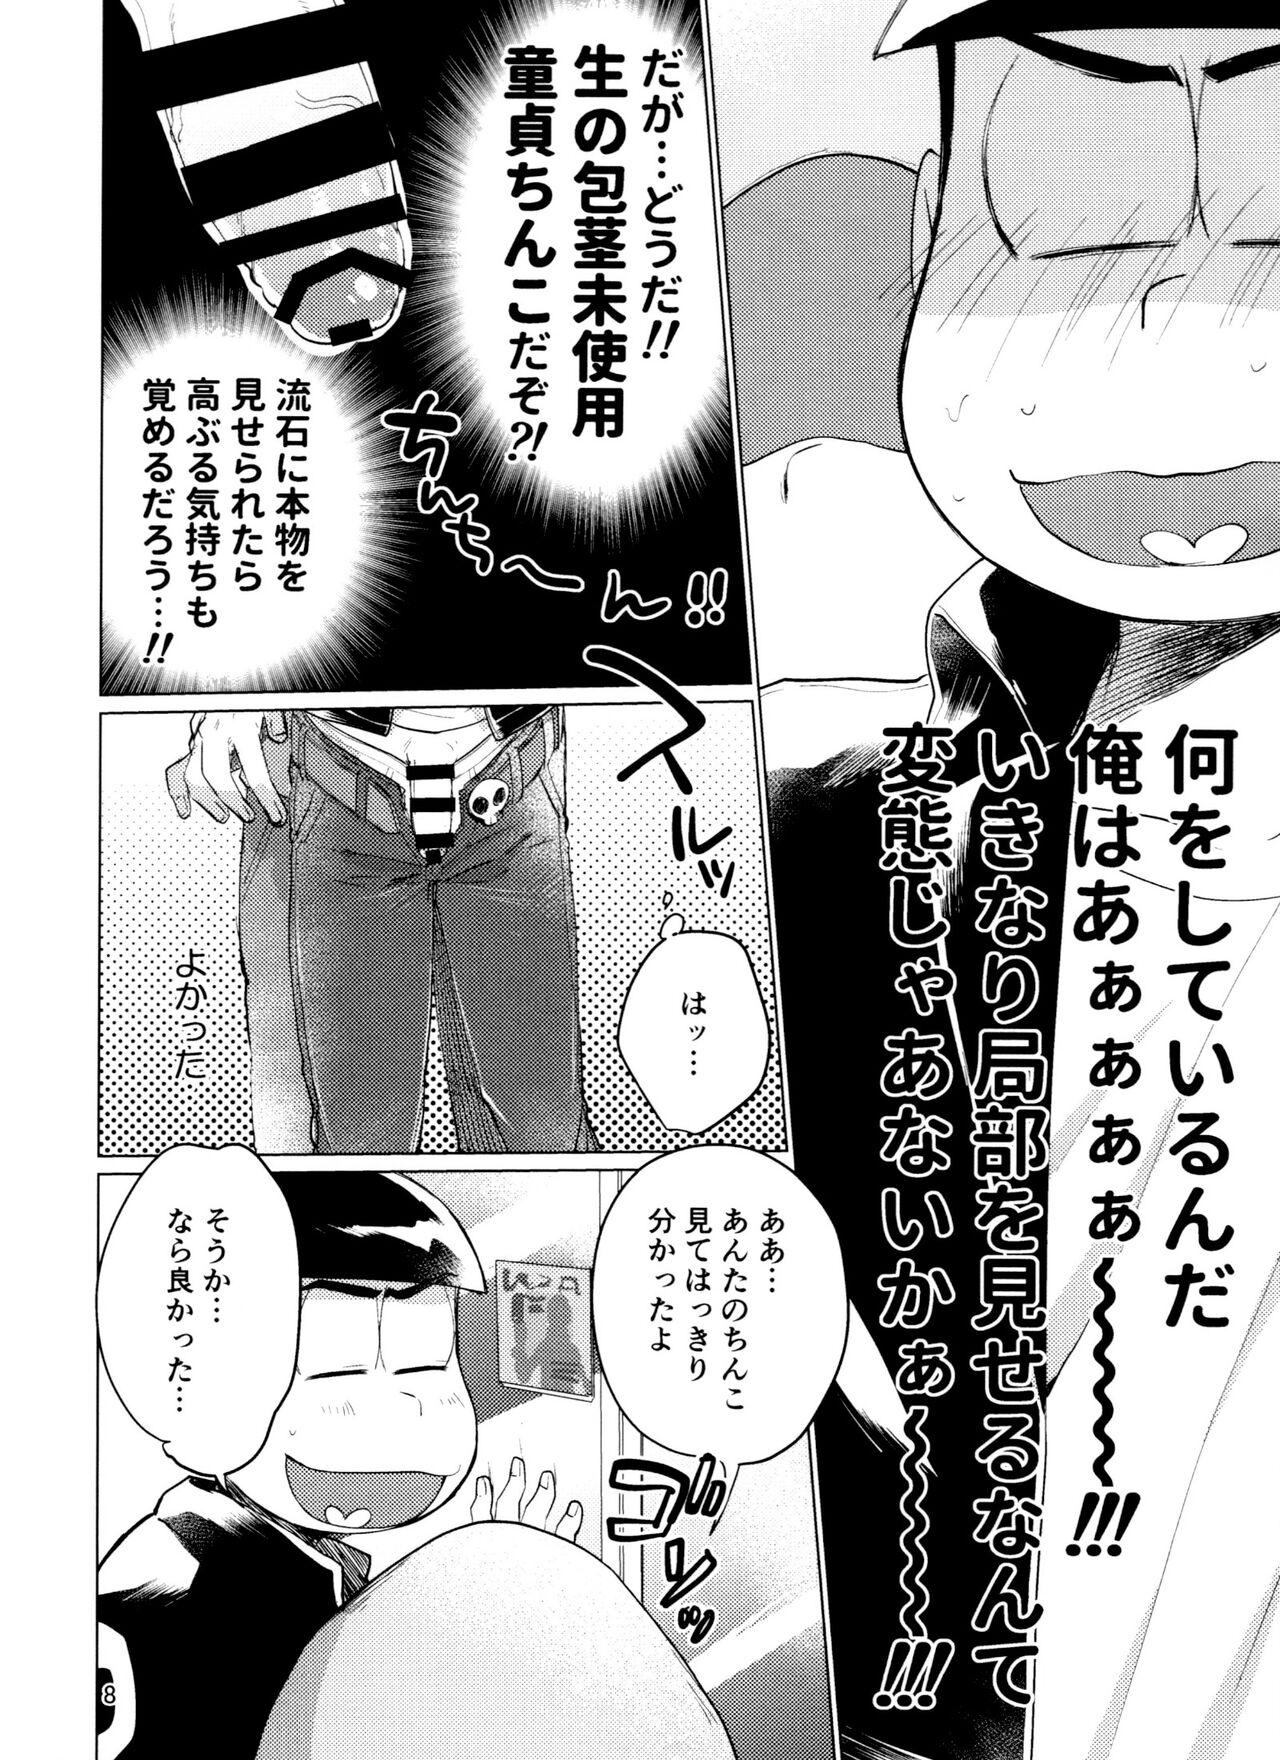 Foda Yame Rarenai Tomaranai! - Osomatsu san Selfie - Page 8